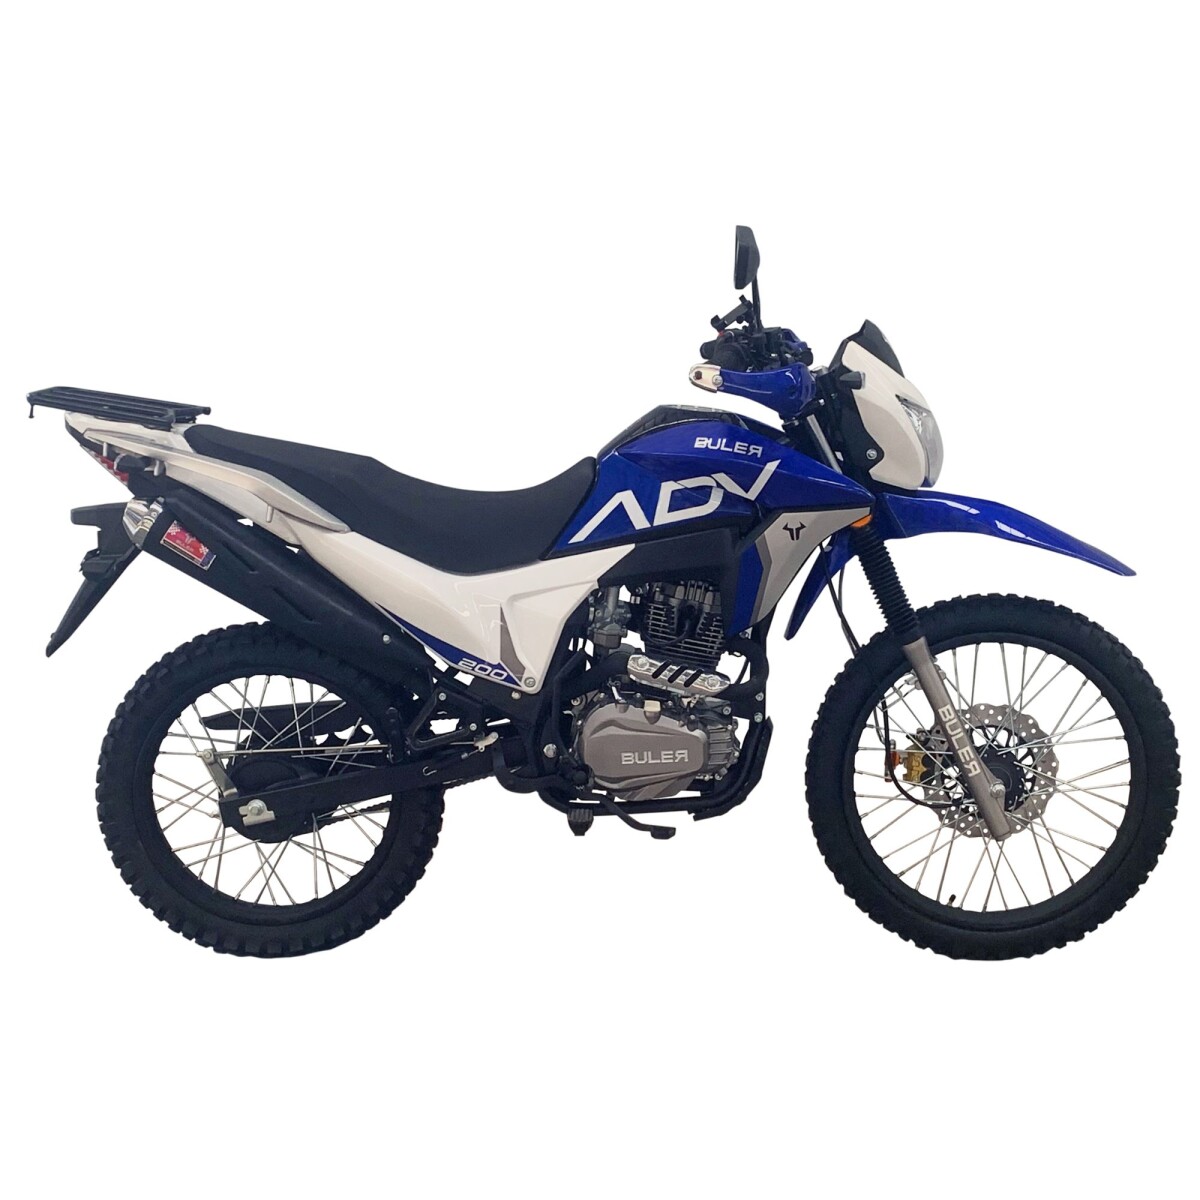 Motocicleta Buler Trail Adventure 200cc - Rayos - Azul 